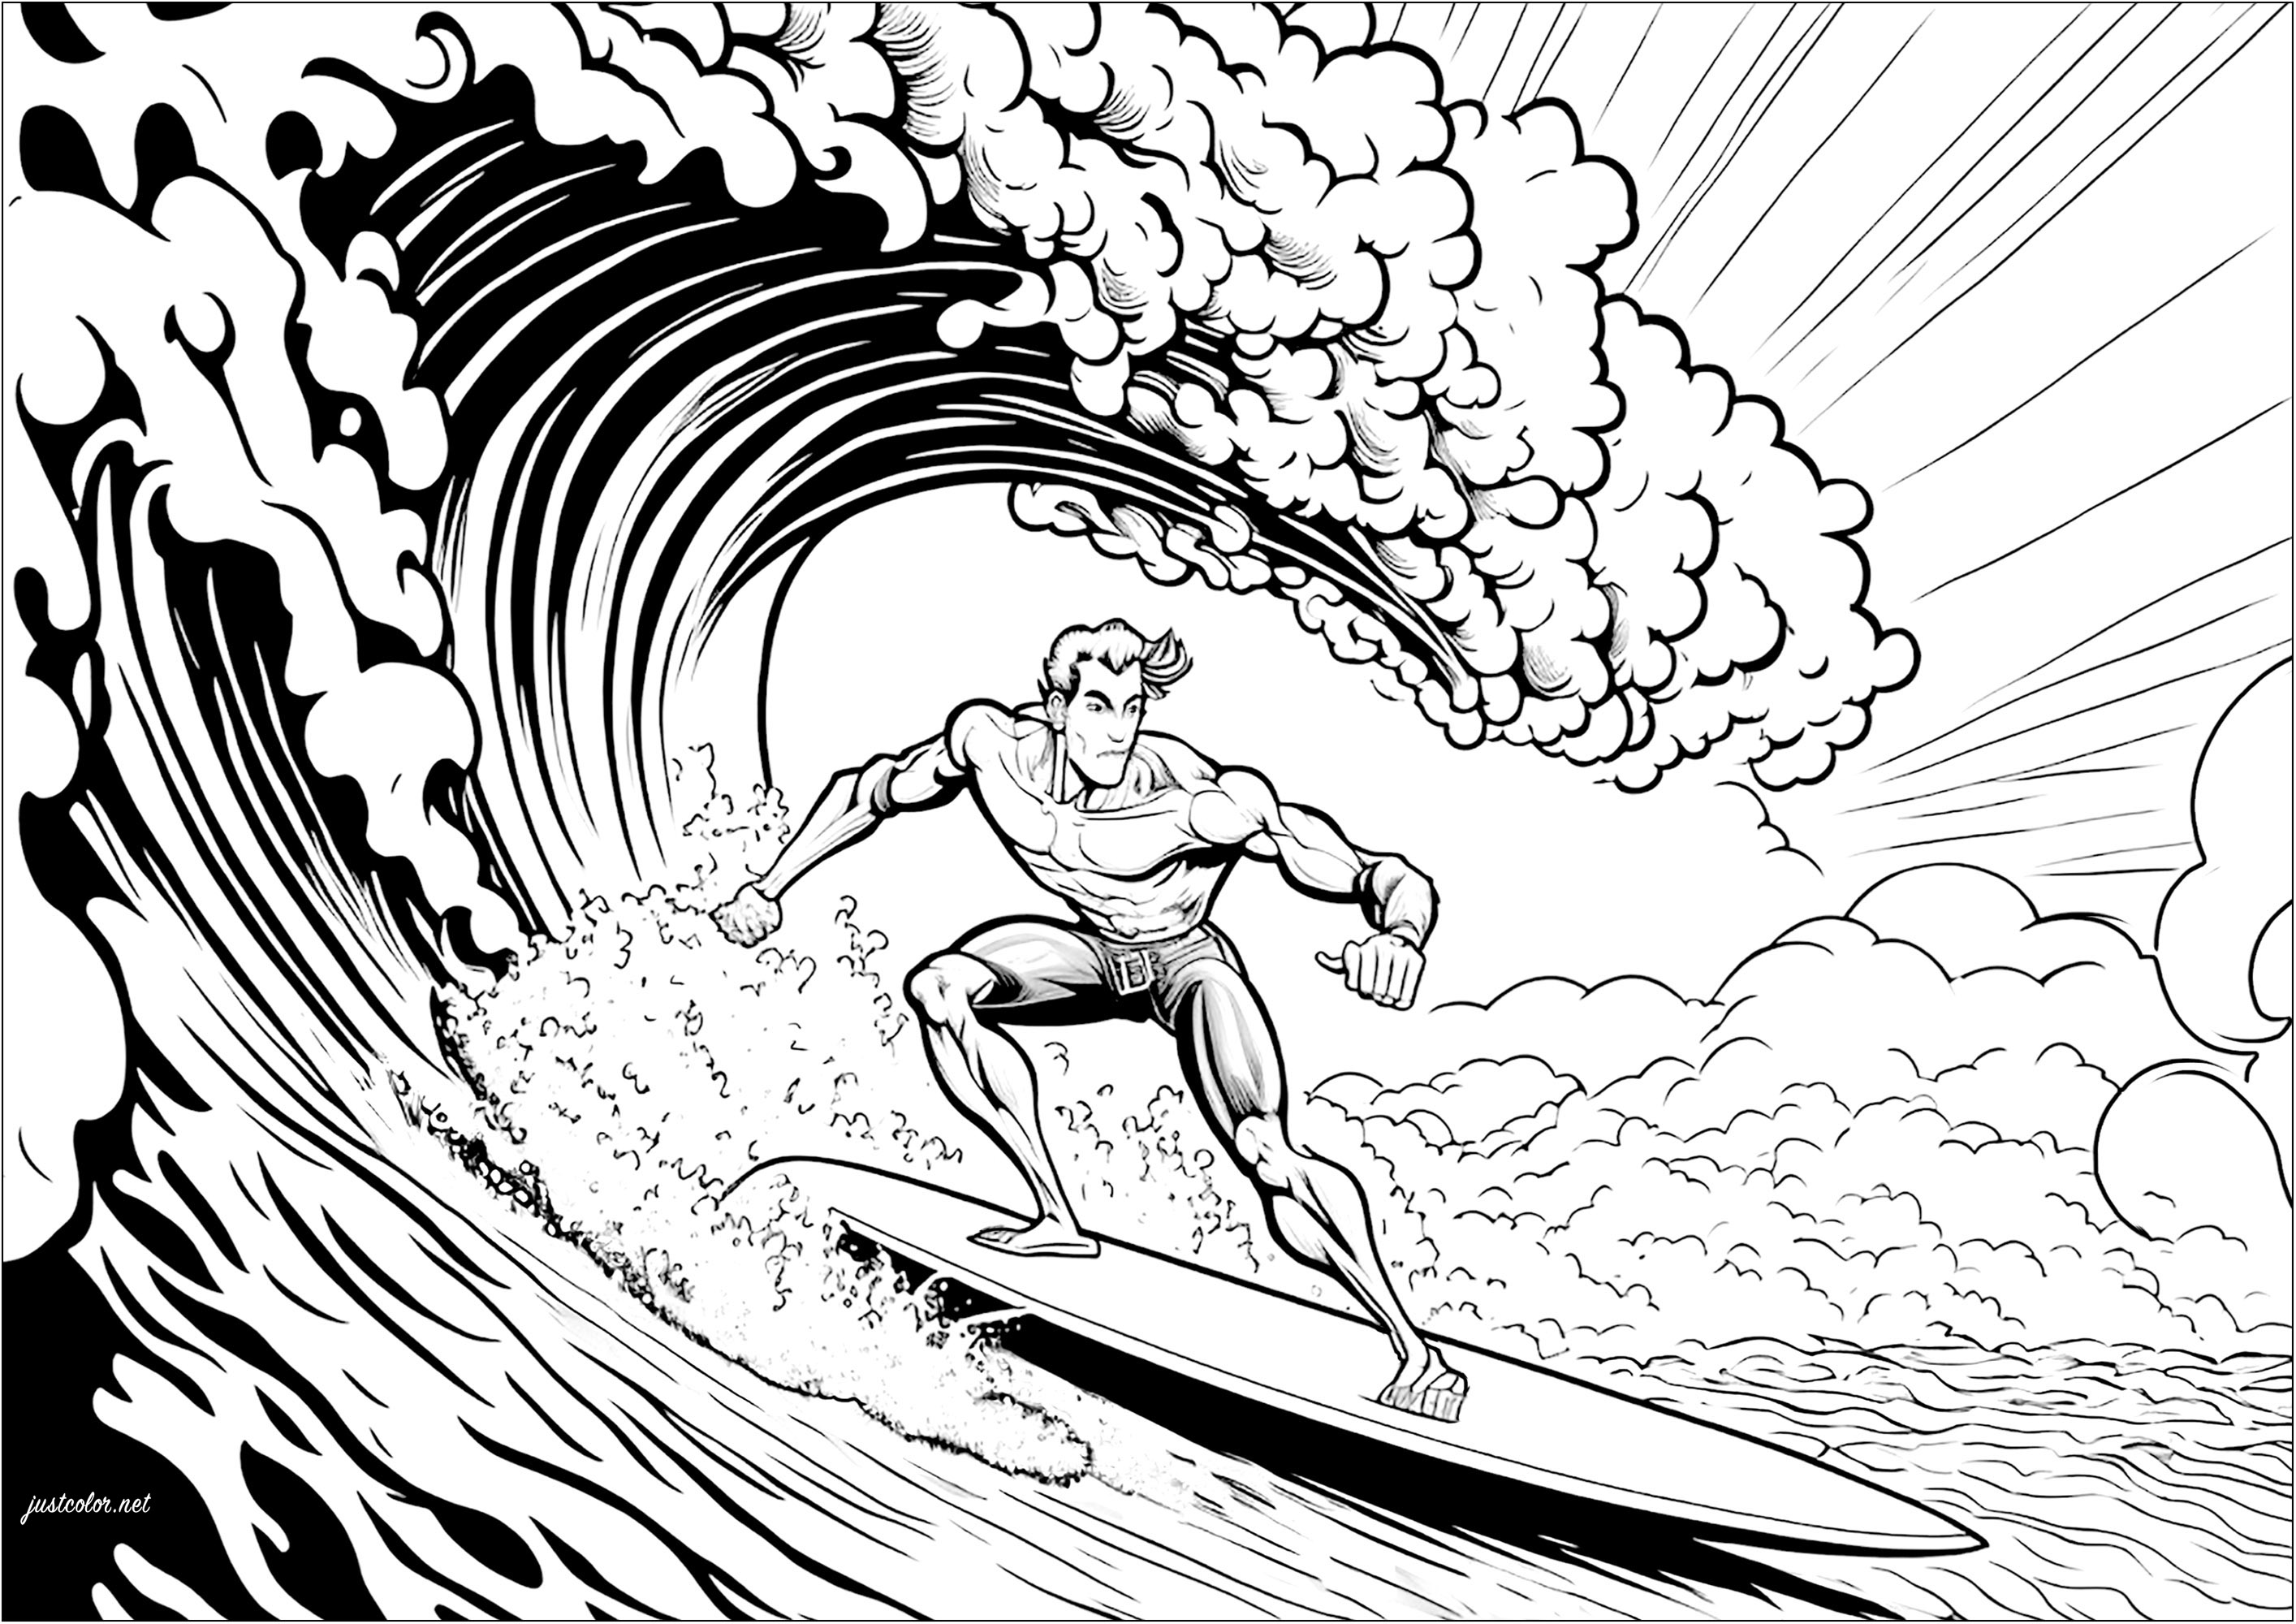 Cavalca le onde con questa divertente pagina da colorare di surfista!.  Con questo surfista che affronta un'onda spaventosa, questa pagina da colorare è perfetta per chi ama il mare, l'oceano e tutti gli sport acquatici.